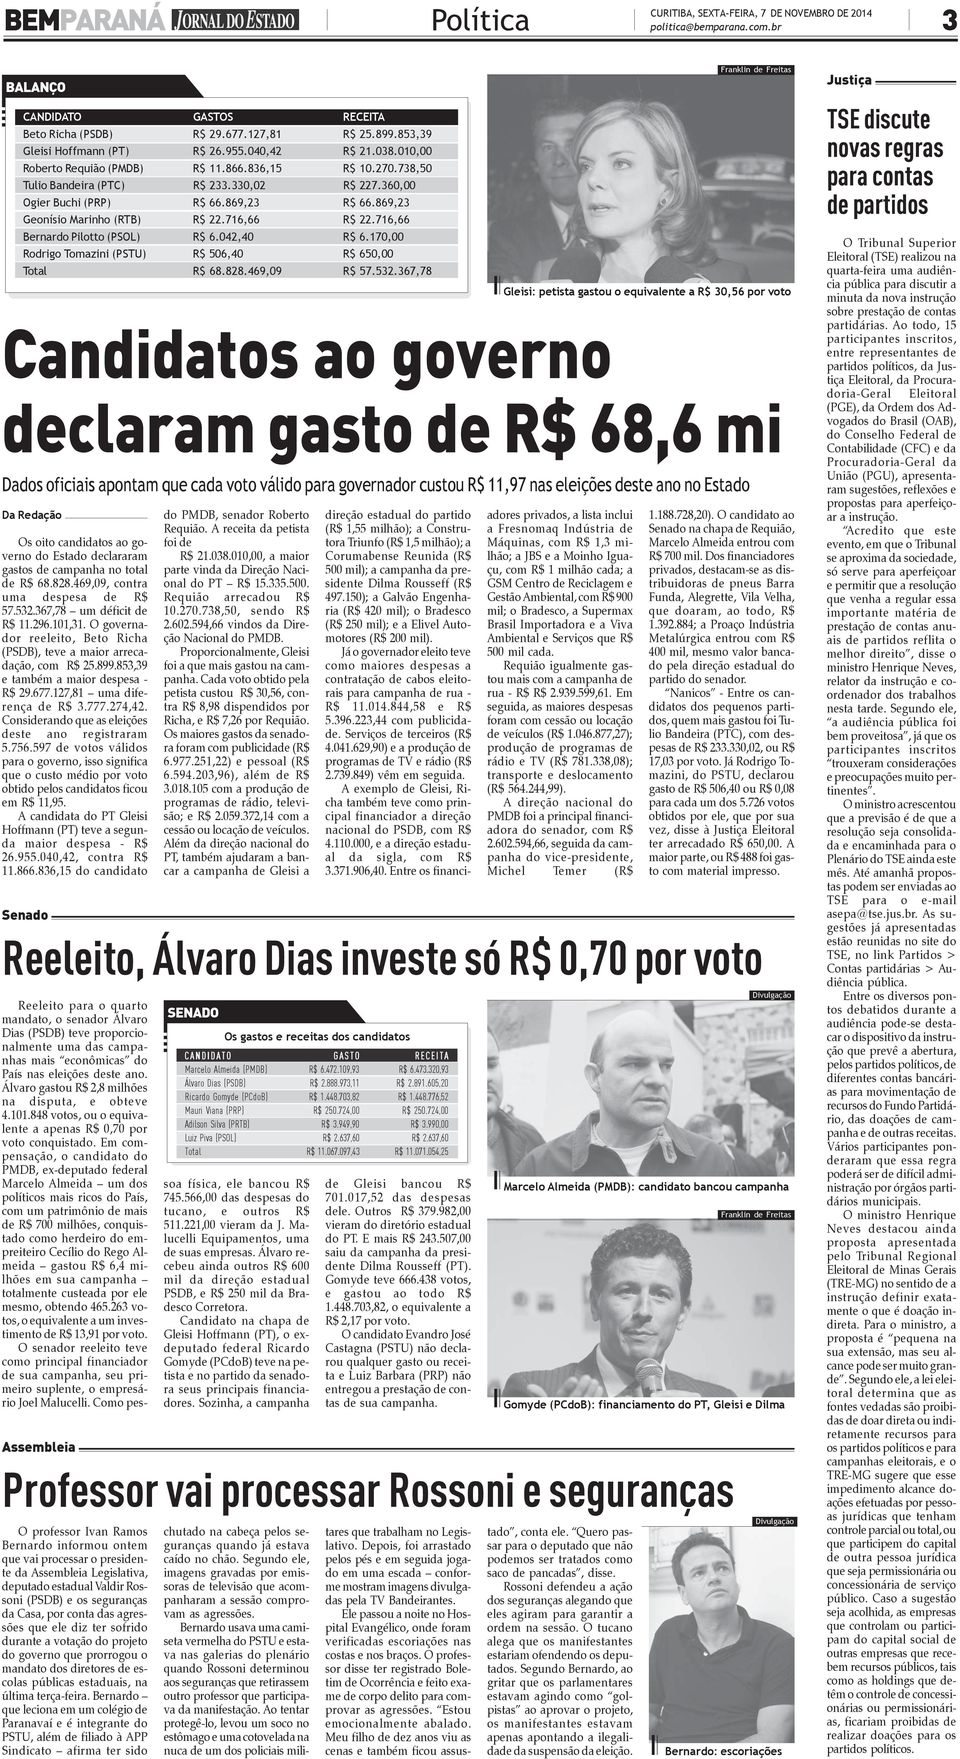 716,66 Bernardo Pilotto (PSOL) R$ 6.042,40 R$ 6.170,00 Rodrigo Tomazini (PSTU) R$ 506,40 R$ 650,00 Total R$ 68.828.469,09 R$ 57.532.